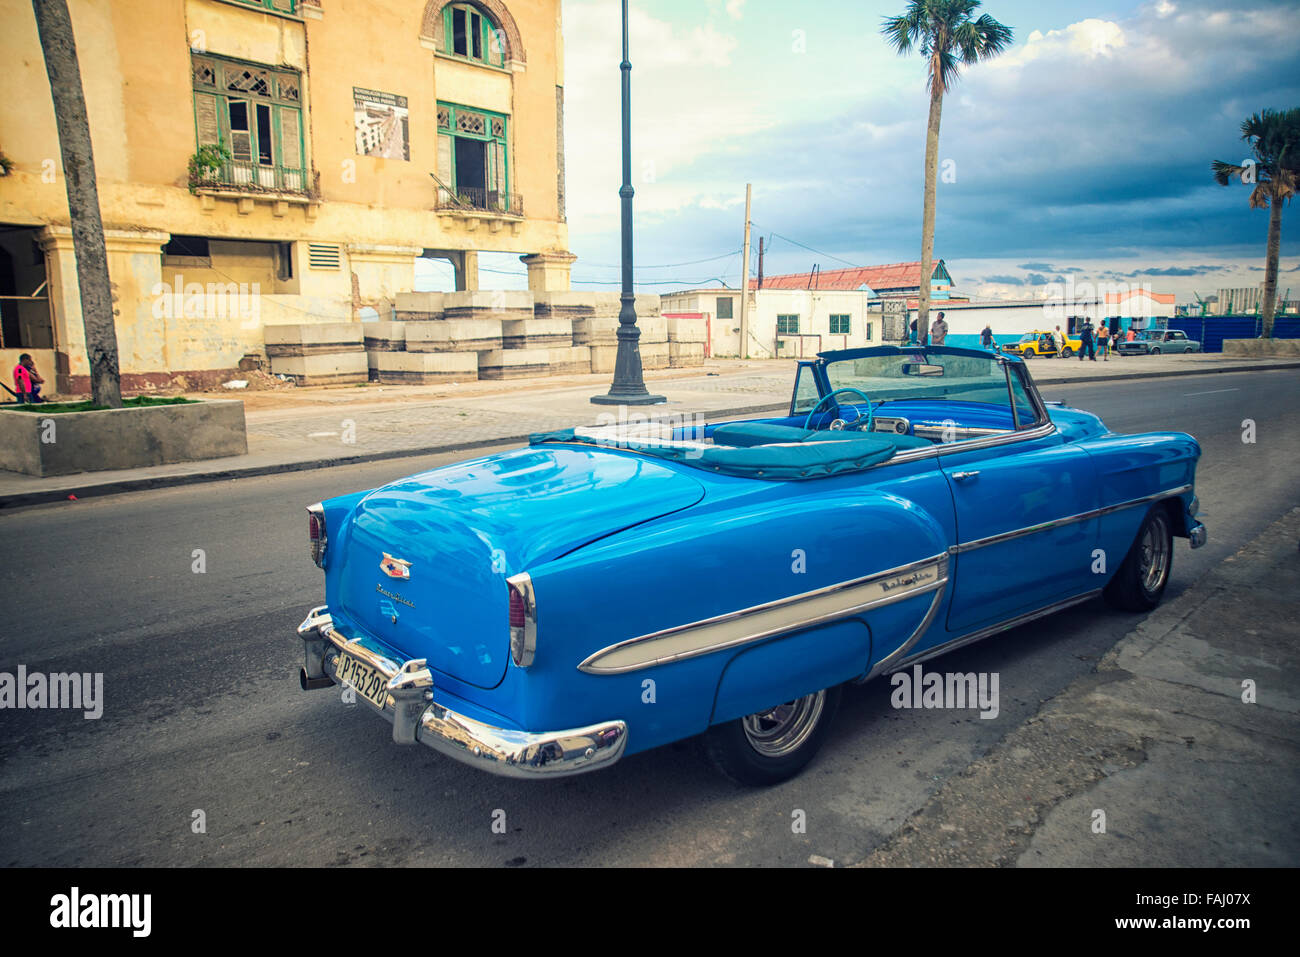 La Habana, Cuba - 4 dic, 2015. Blue vintage clásico coche americano, comúnmente utilizado como taxi aparcado en la calle de La Habana. Foto de stock